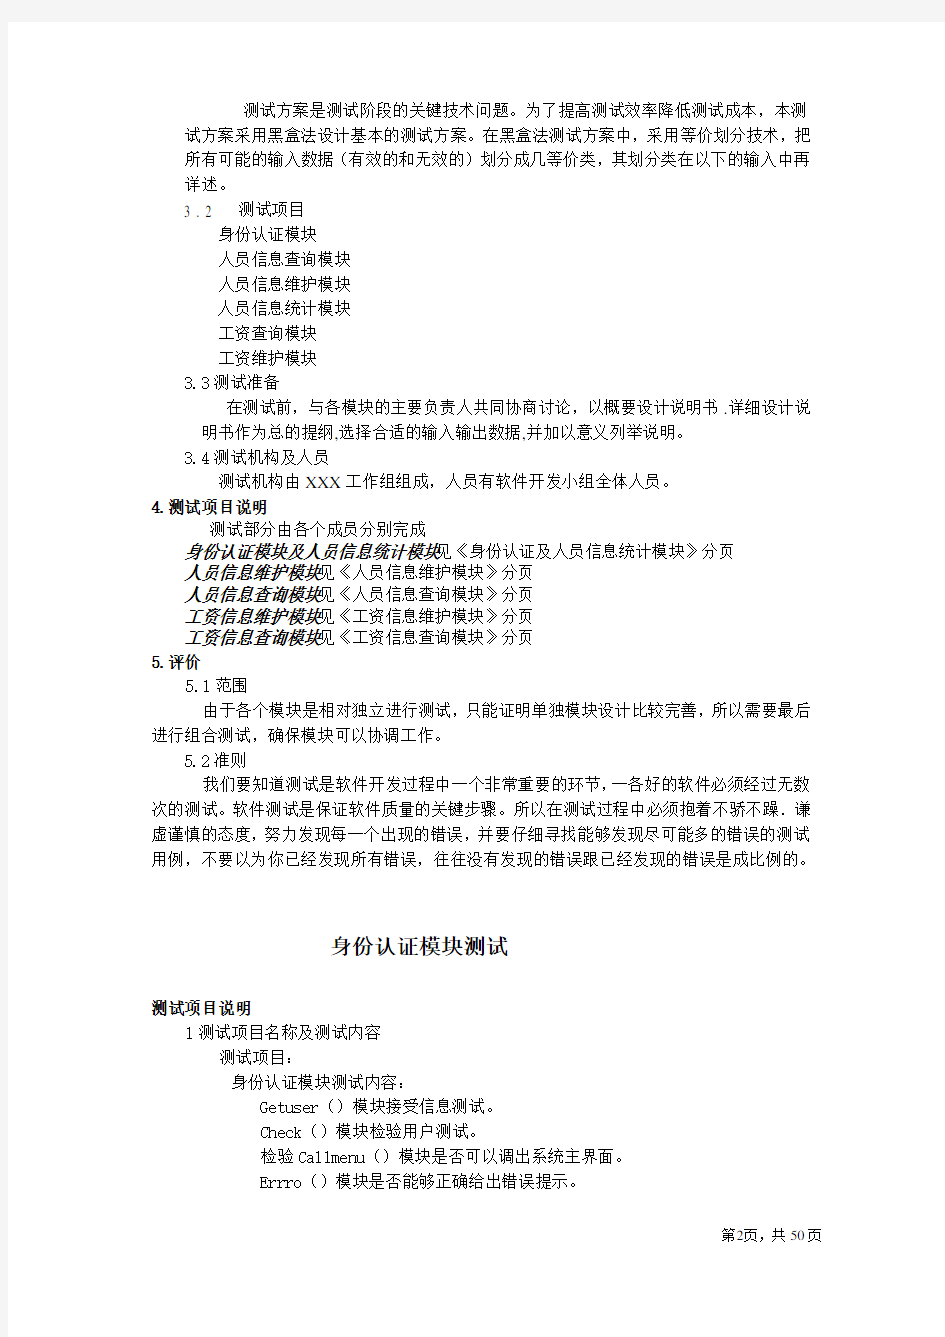 西软中国-人事管理系统测试计划